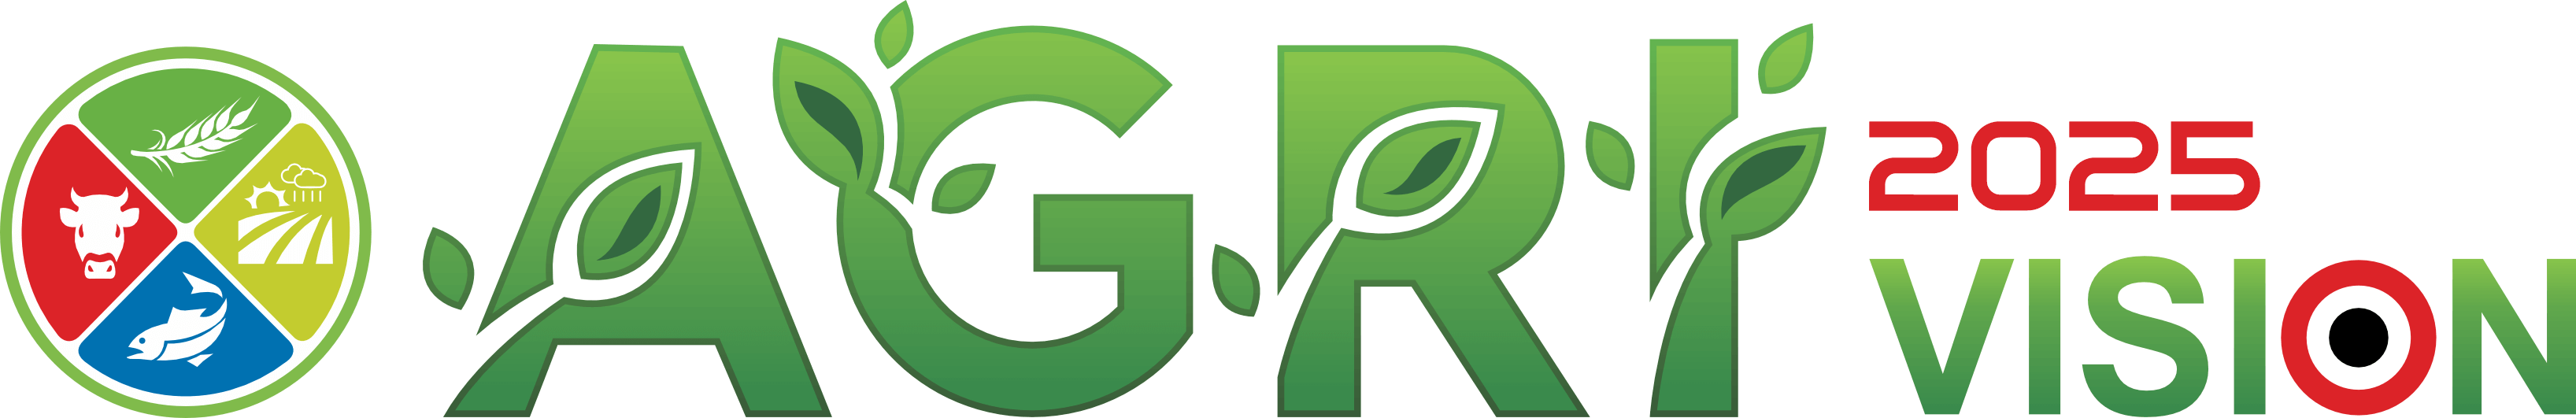 Agri Vision 2025 Logo